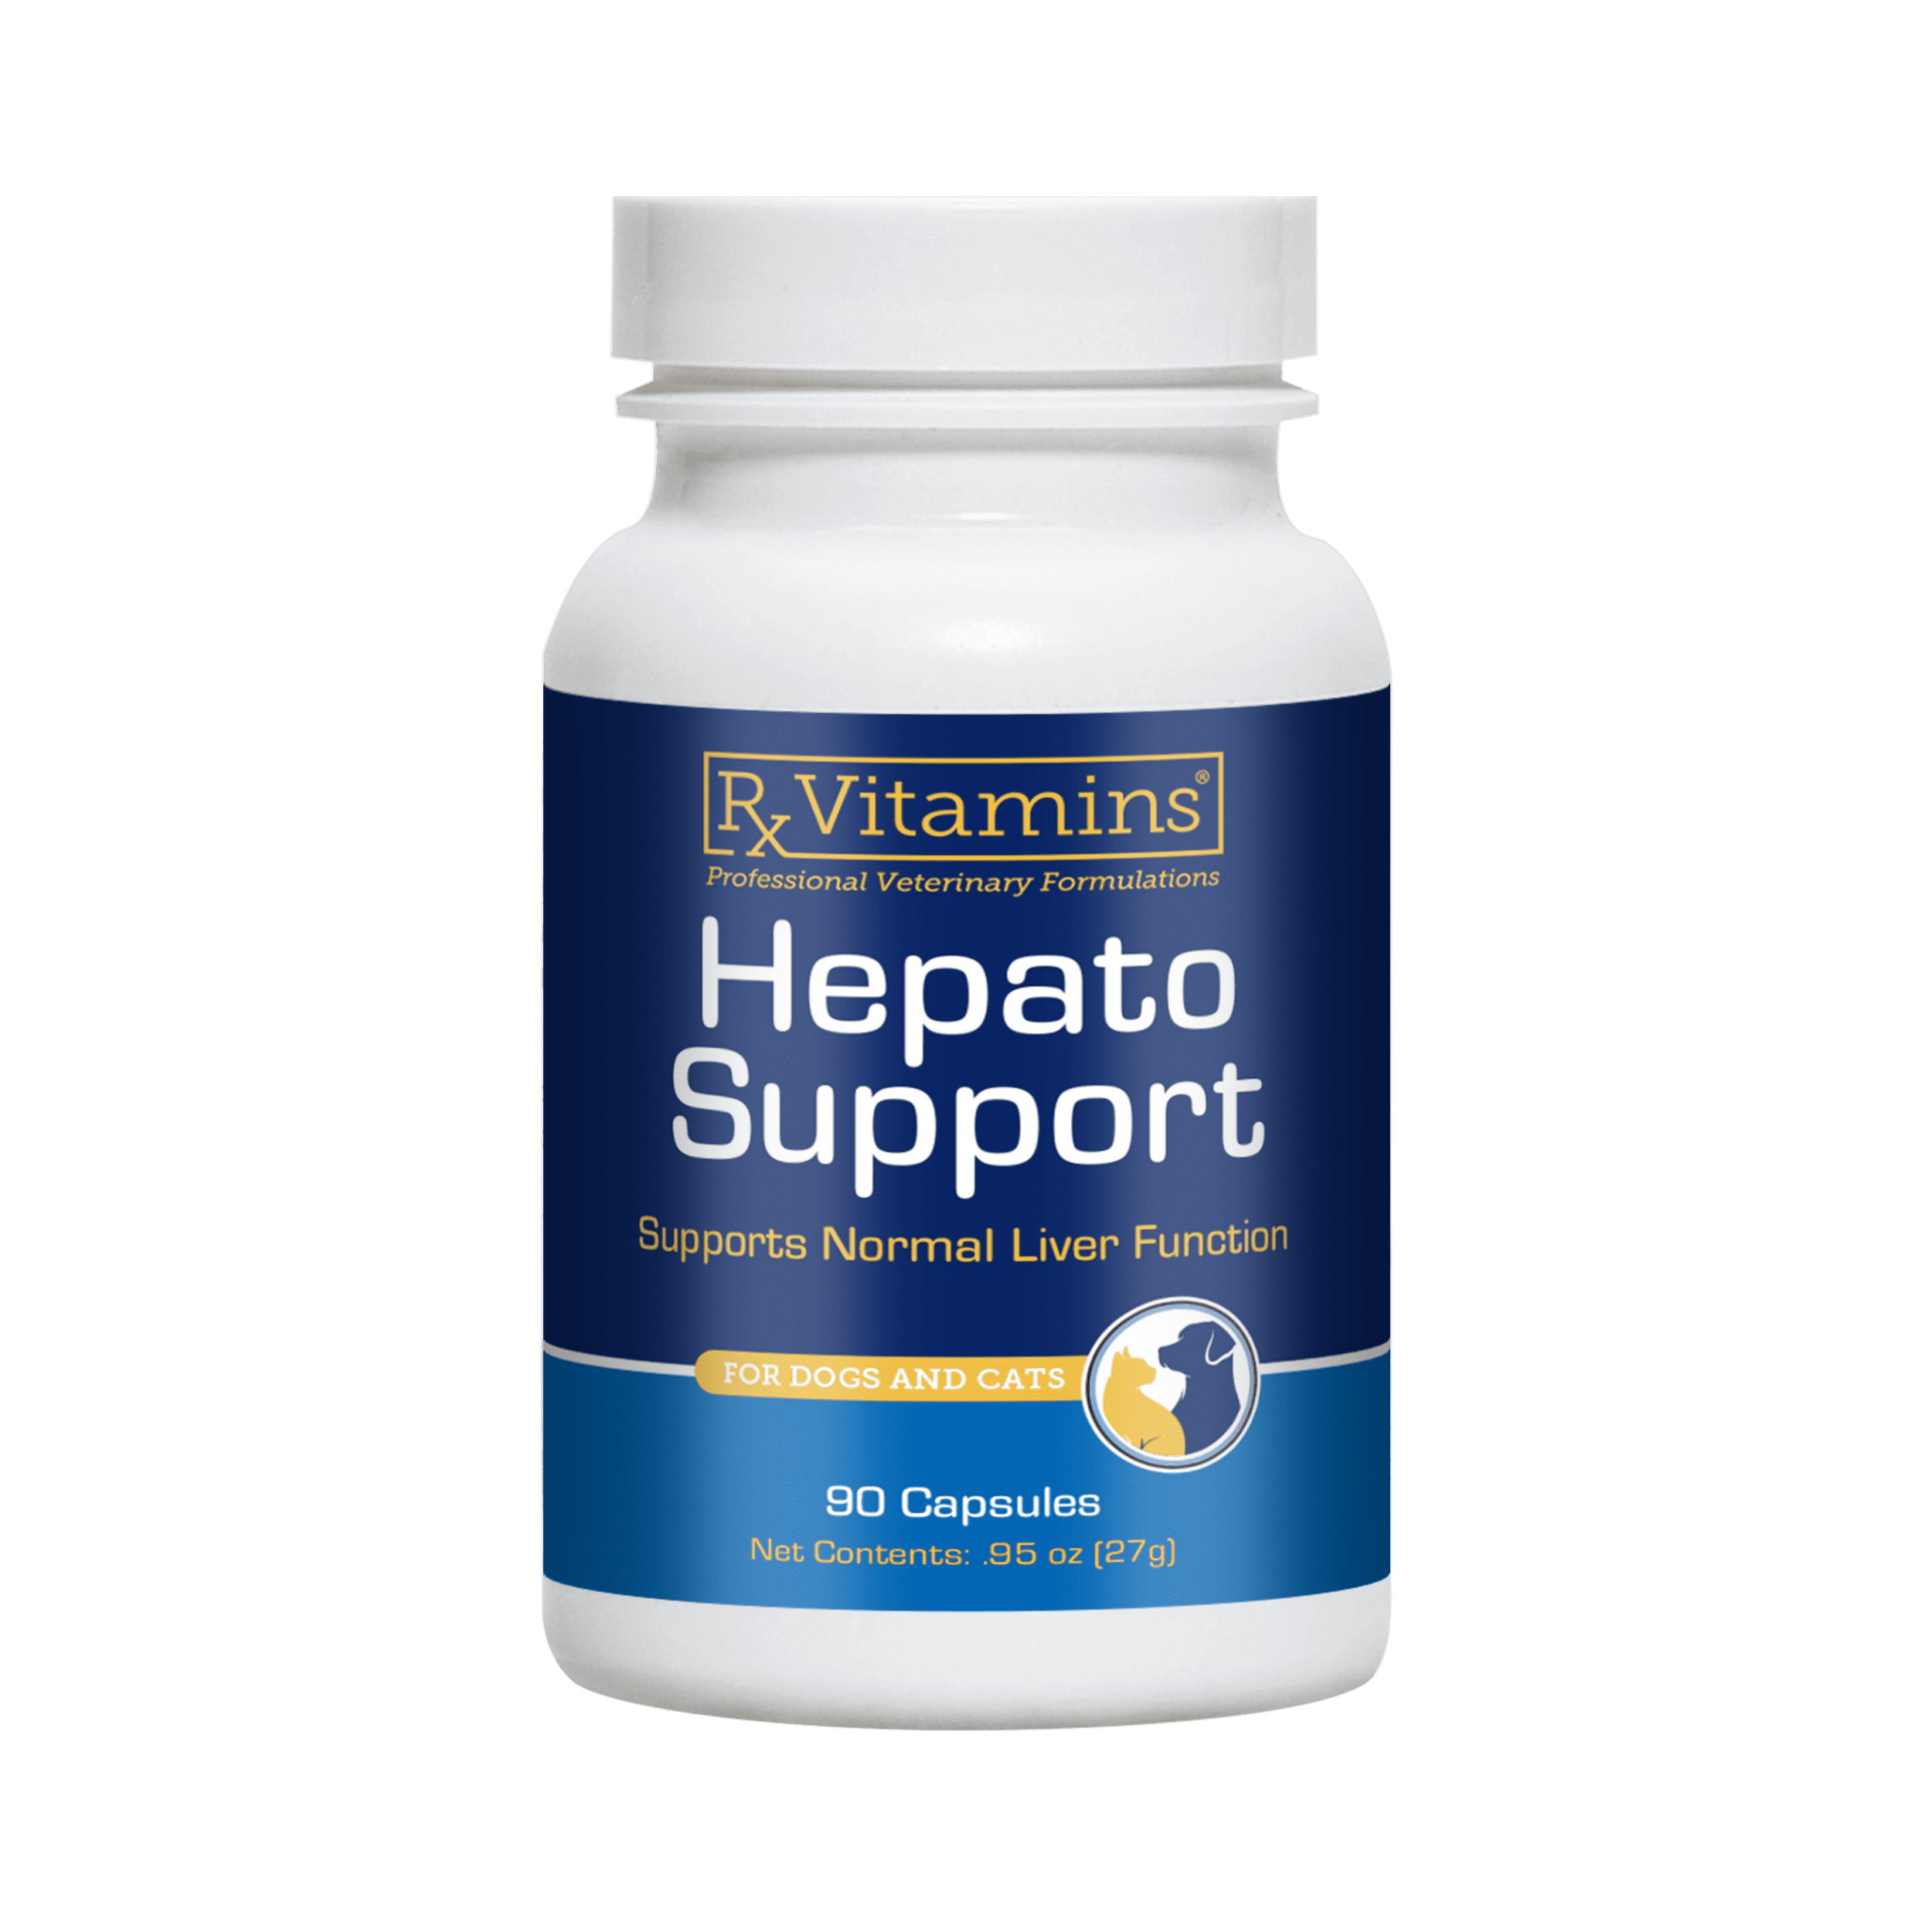 Hepato Support